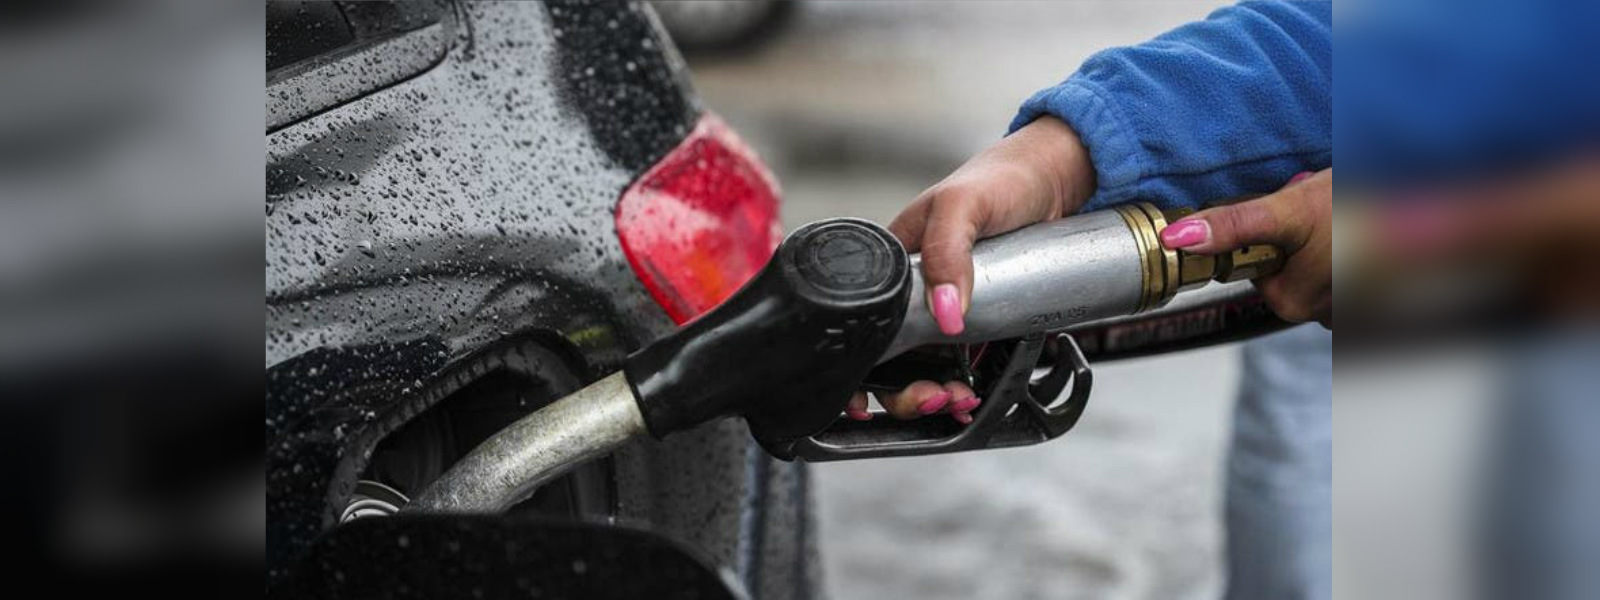 Lanka IOC hikes petrol prices